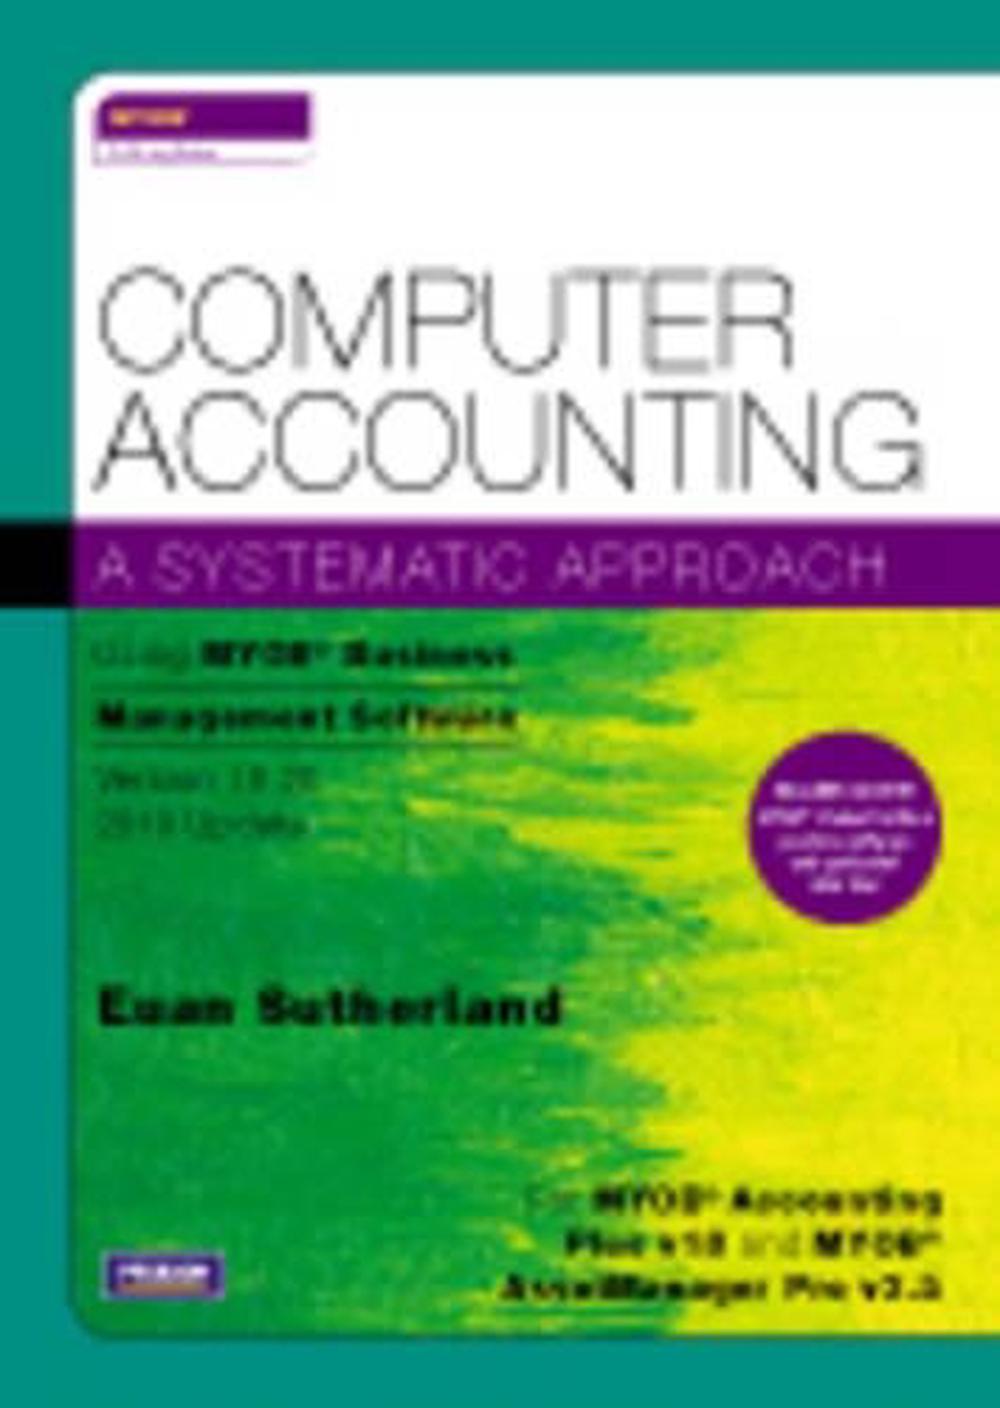 download myob accounting v18 ed